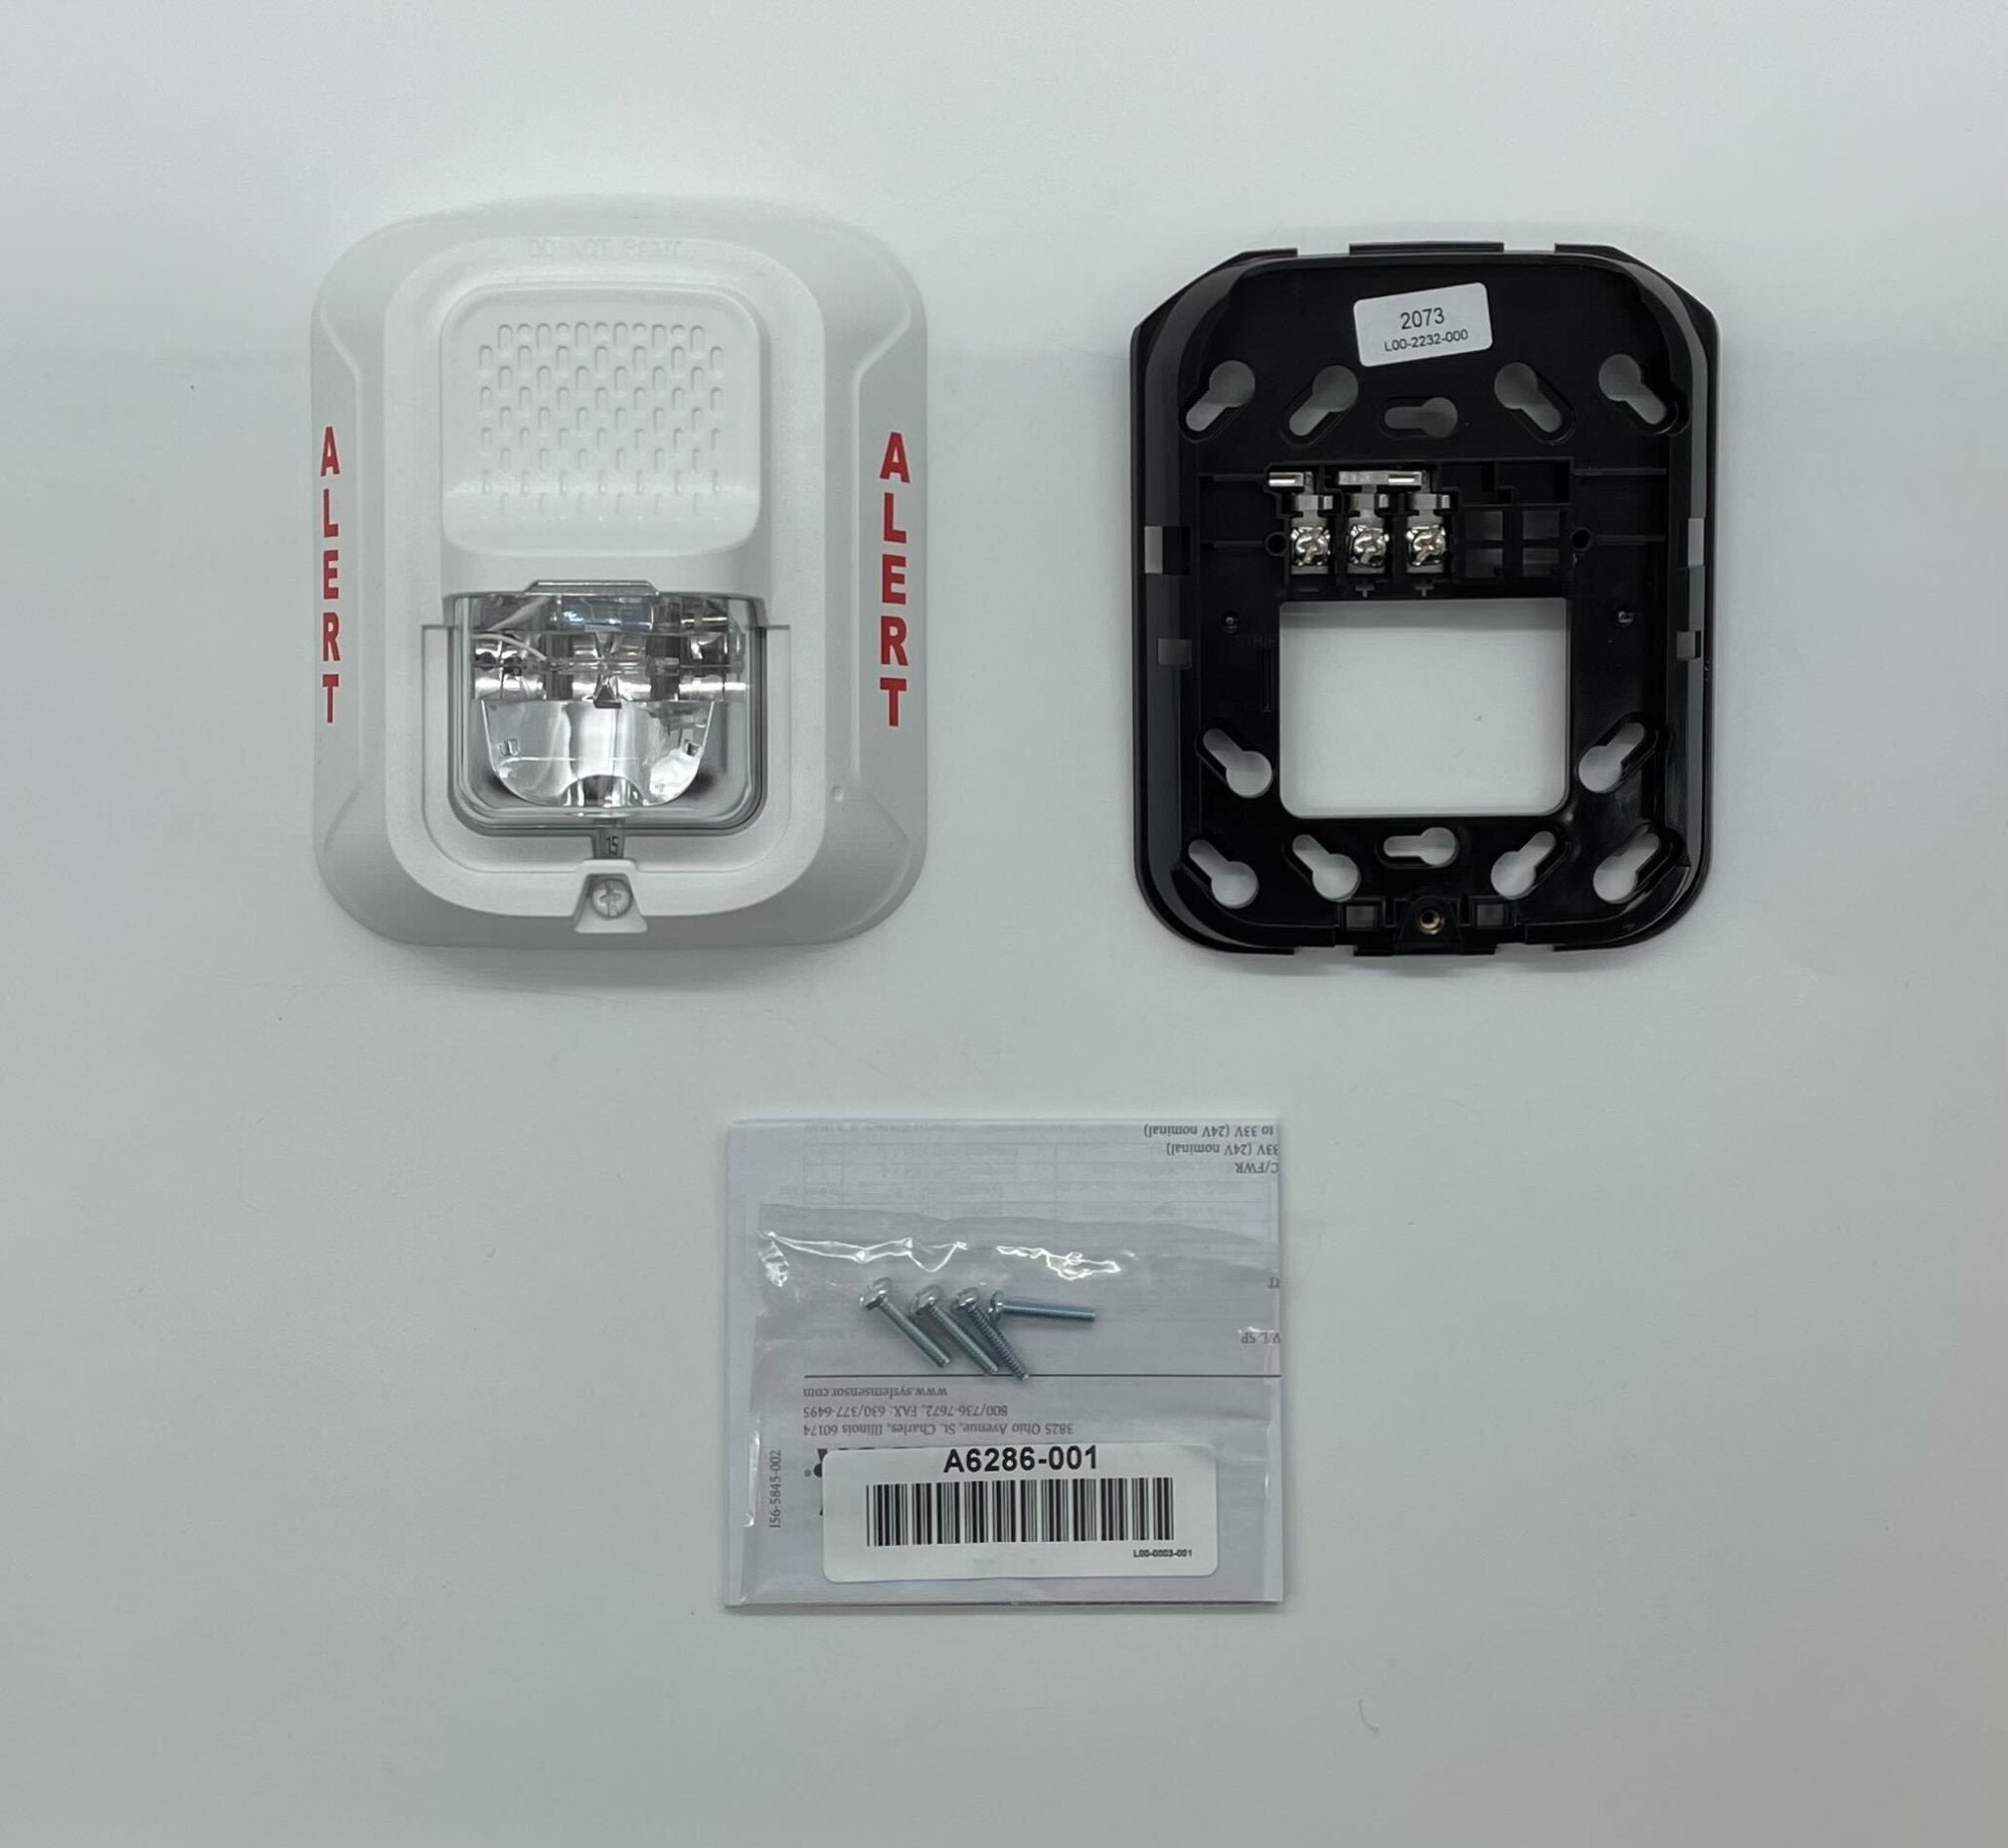 System Sensor SWL-CLR-ALERT White Speaker Strobe - The Fire Alarm Supplier